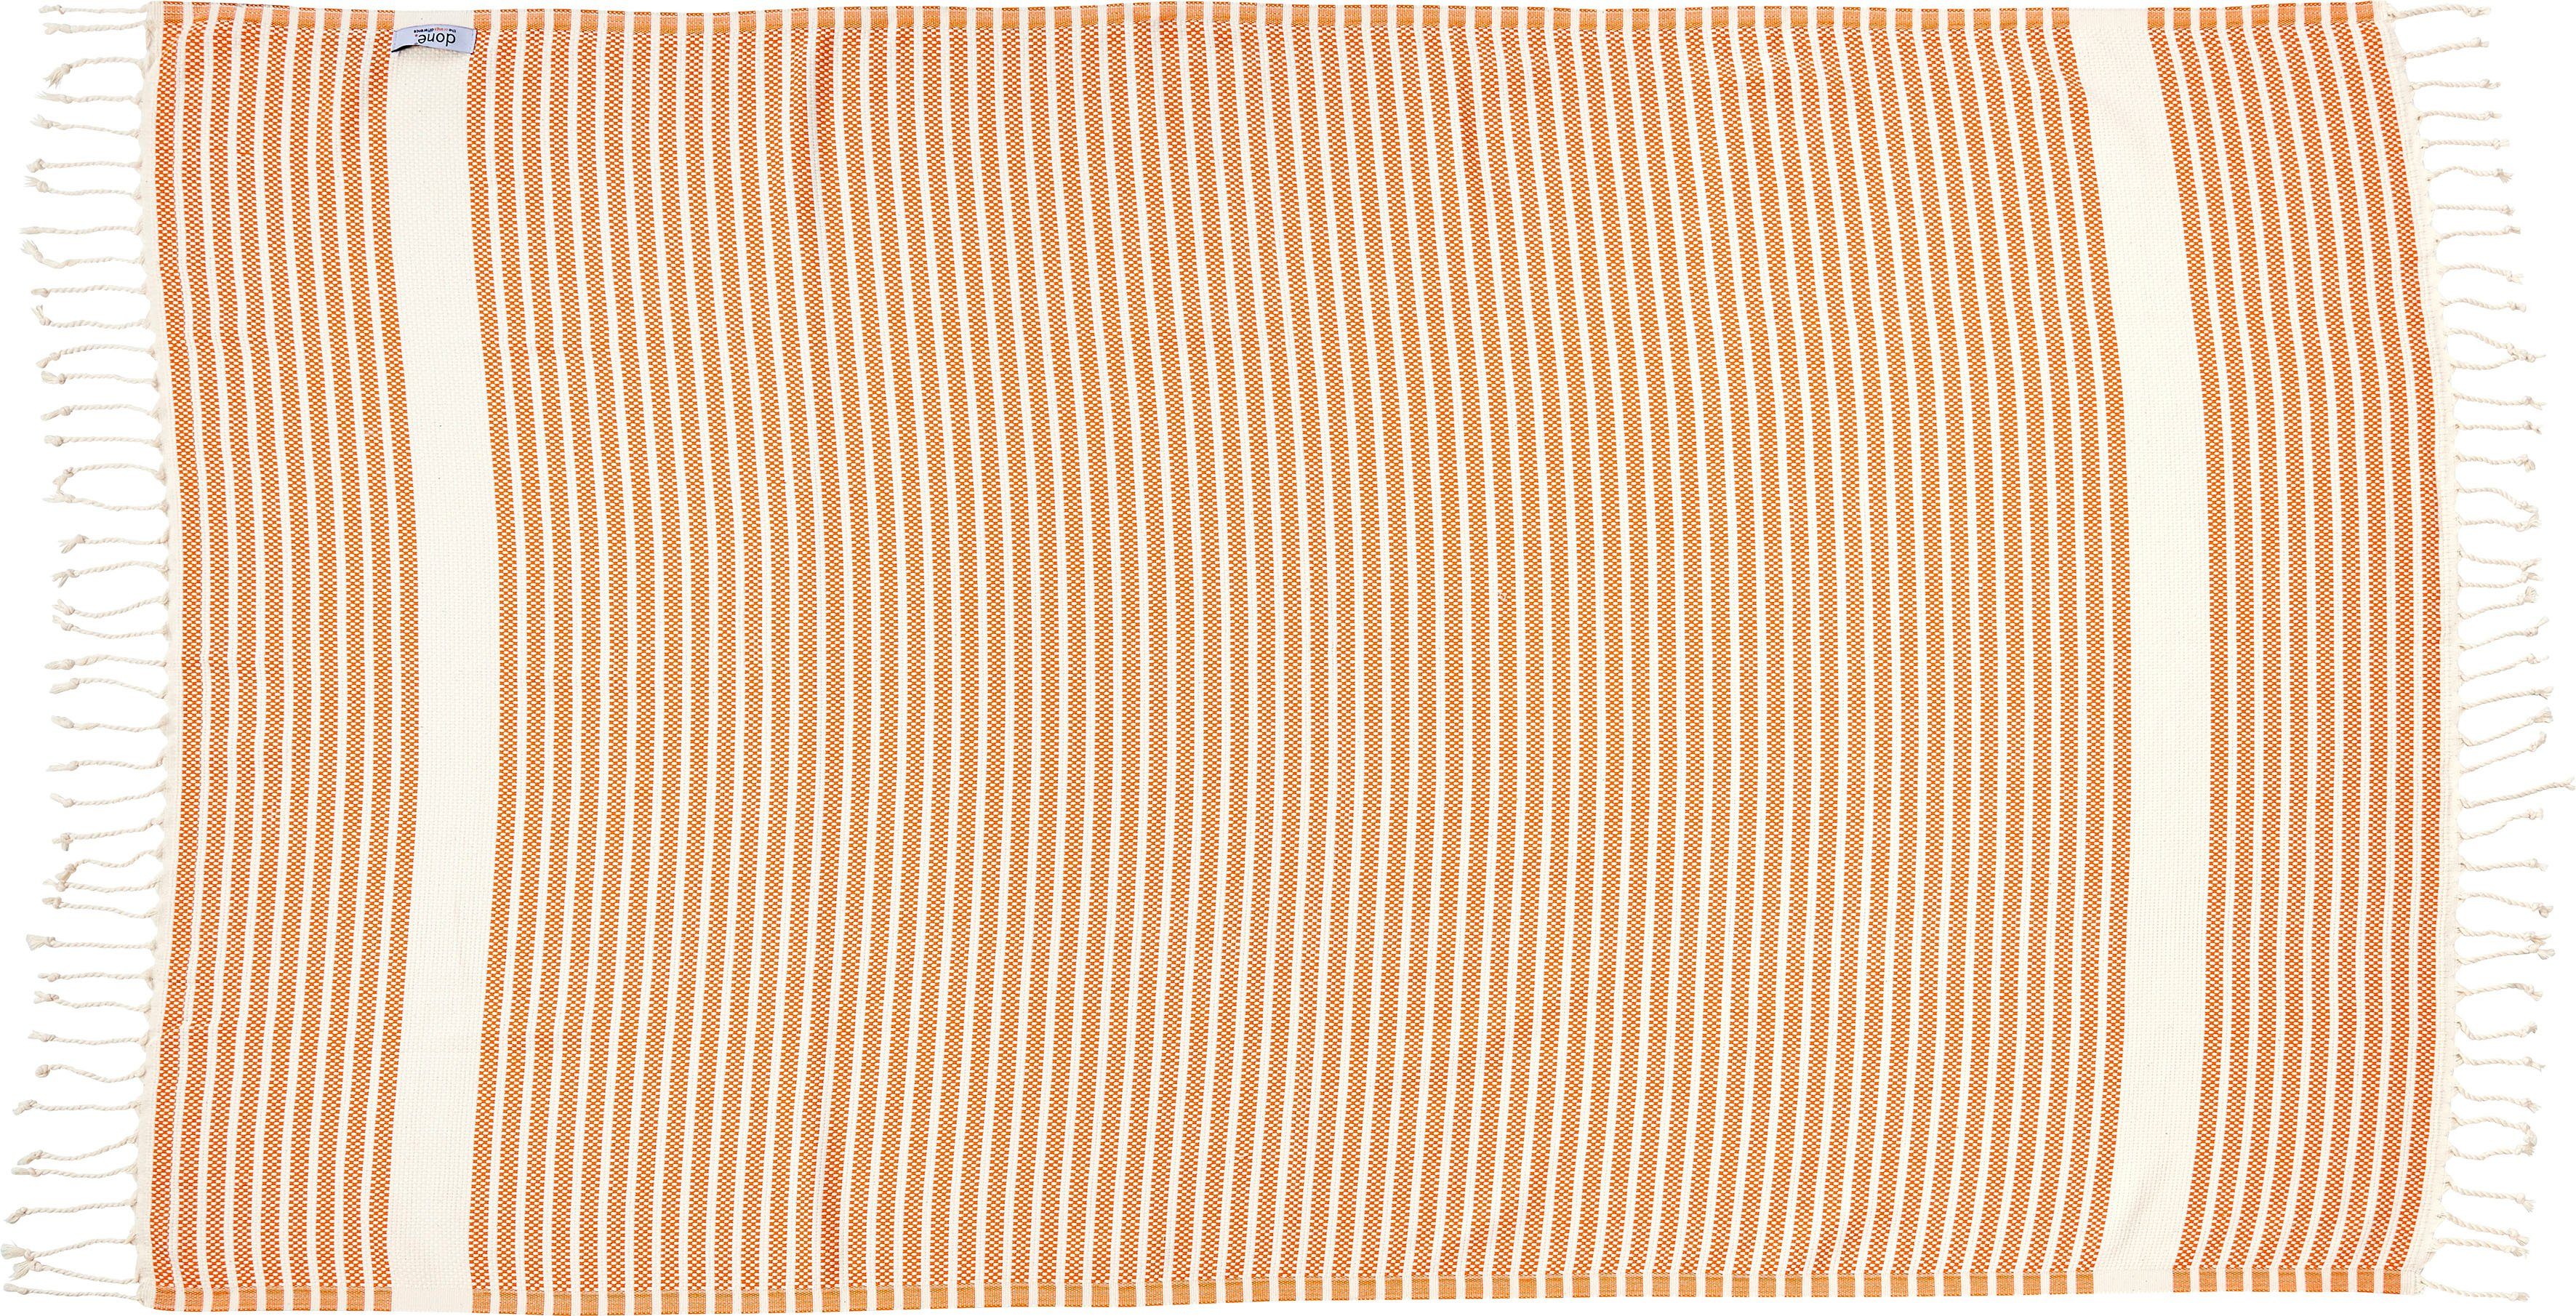 Stripes, Lounge Fransen done.®, mit Plaid geknoteten Leichtes Plaid orange/beige